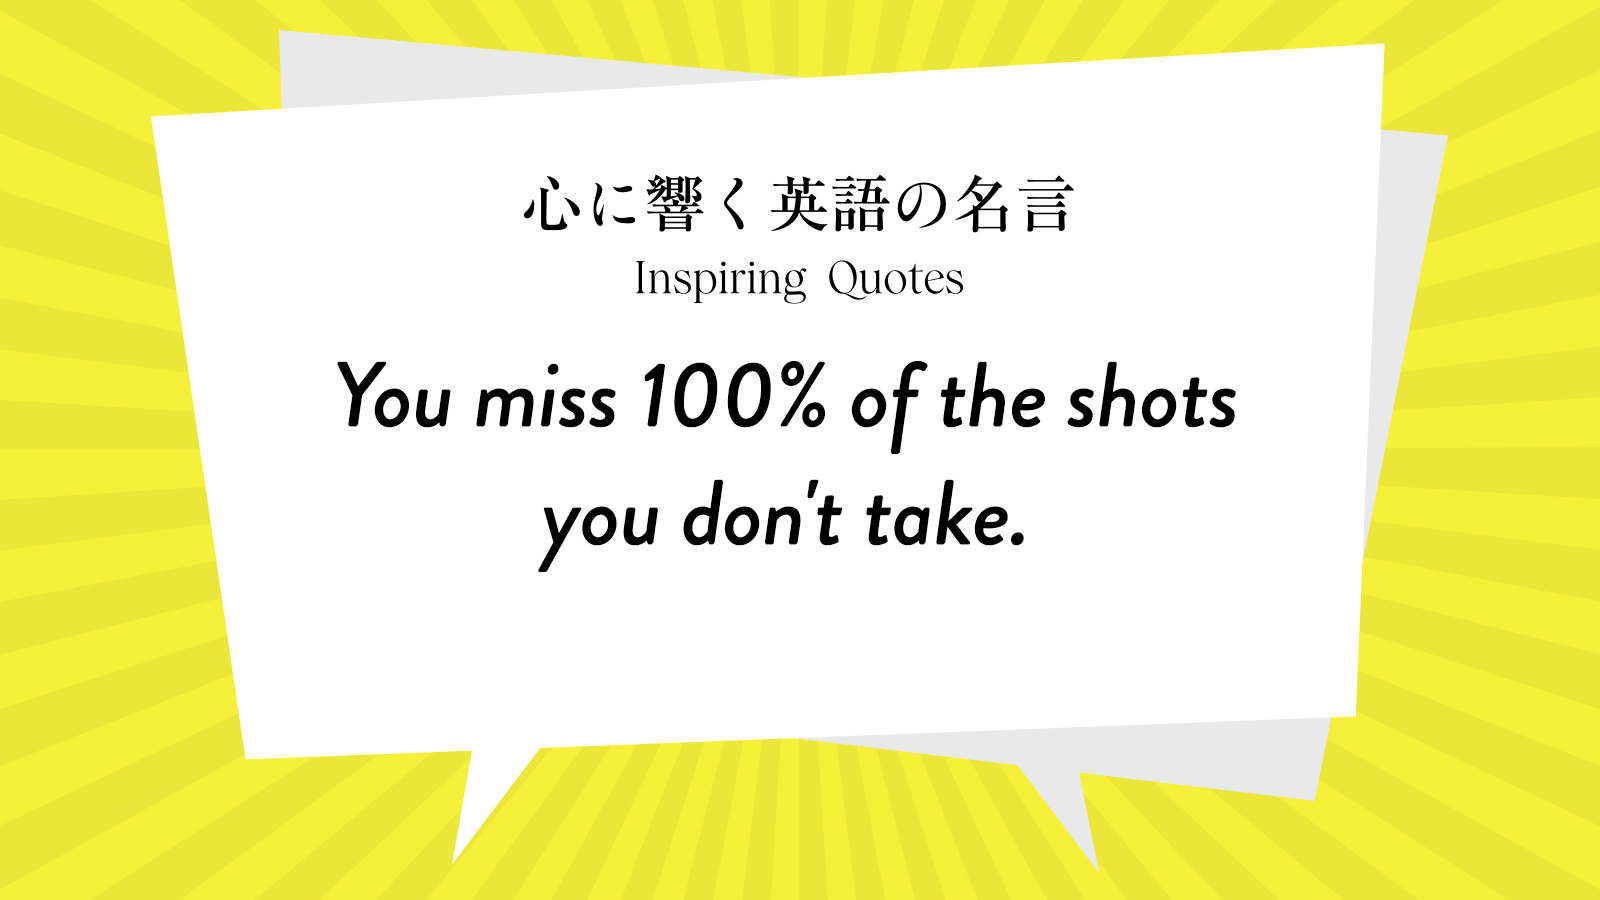 今週の名言 “You miss 100% of the shots you don\'t take.” | Inspiring Quotes: 心に響く英語の名言